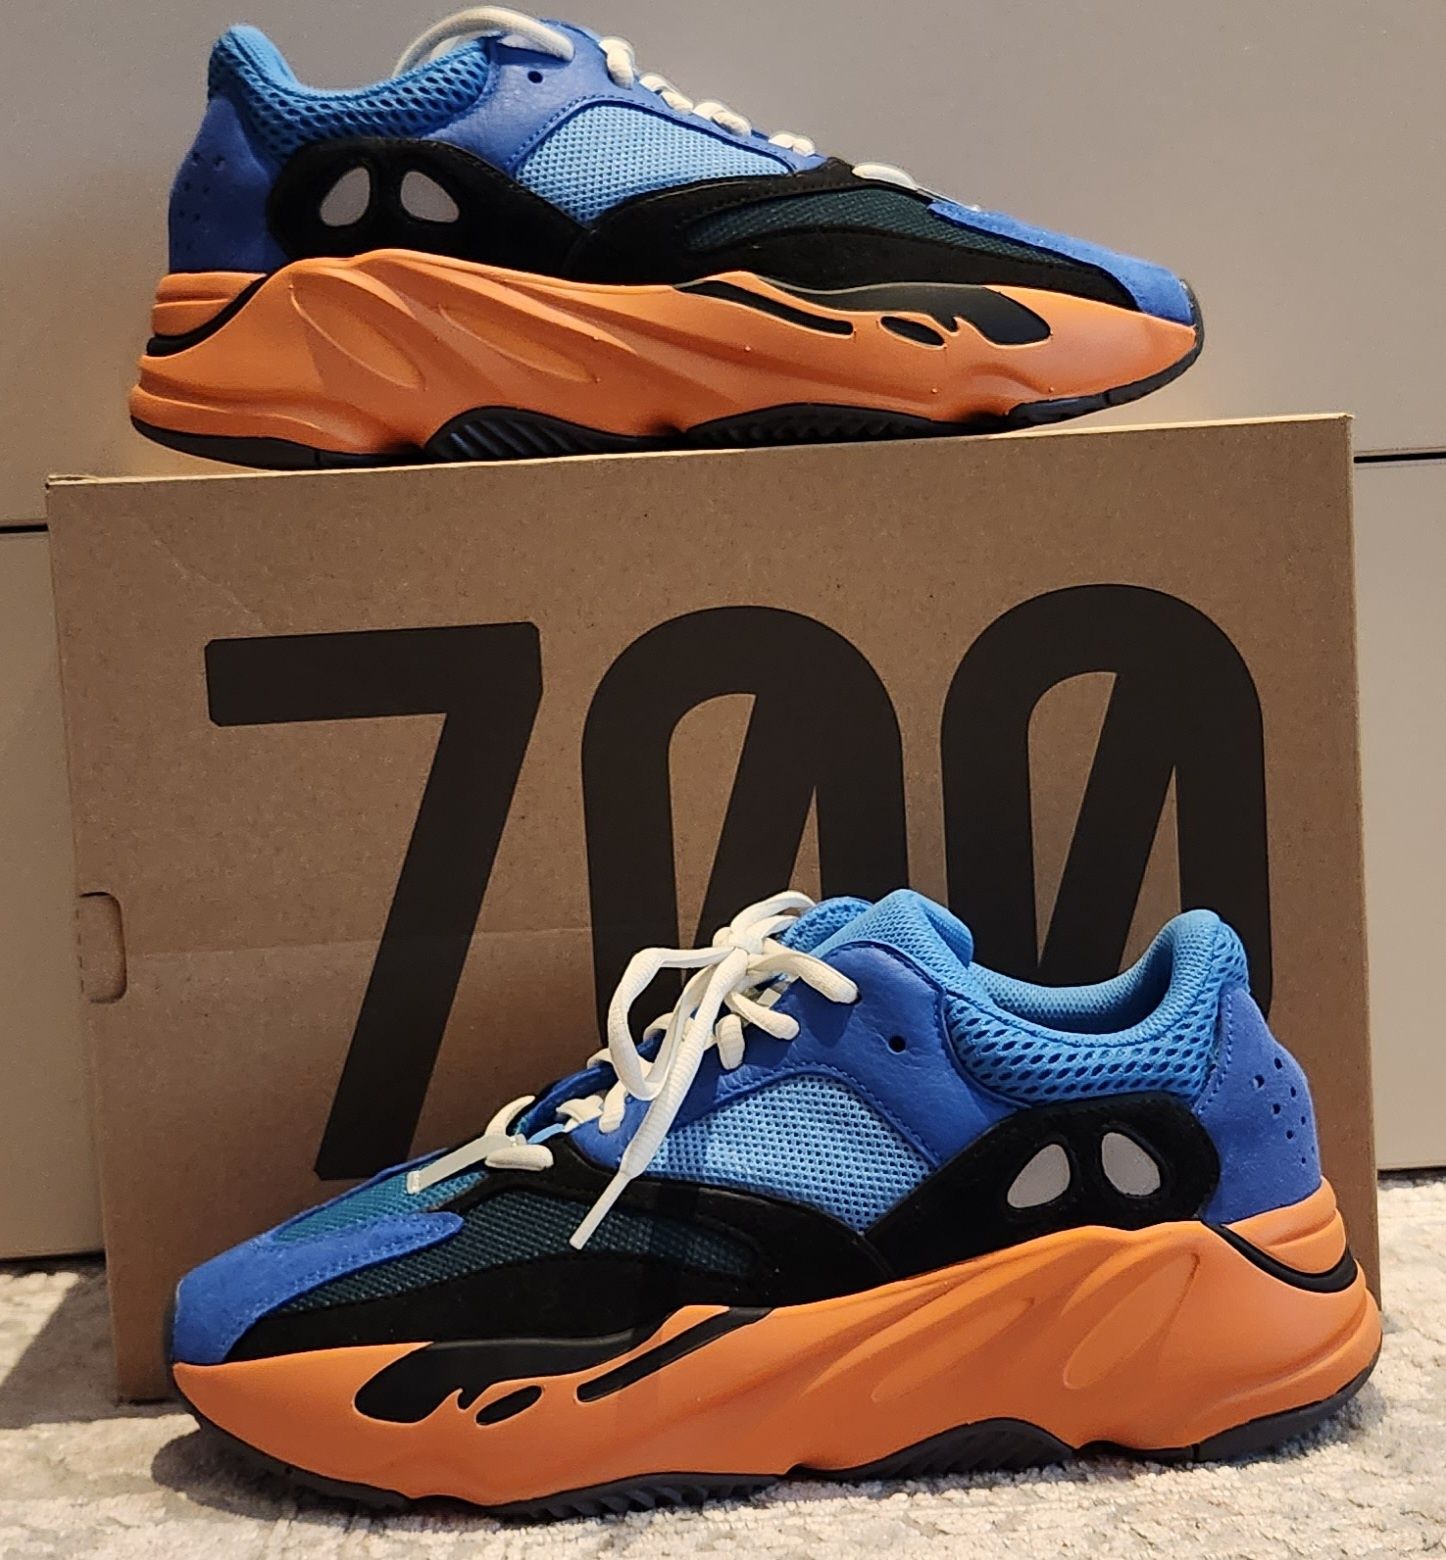 Adidas Yeezy Boost 700 Bright Blue -EU 43 1/3